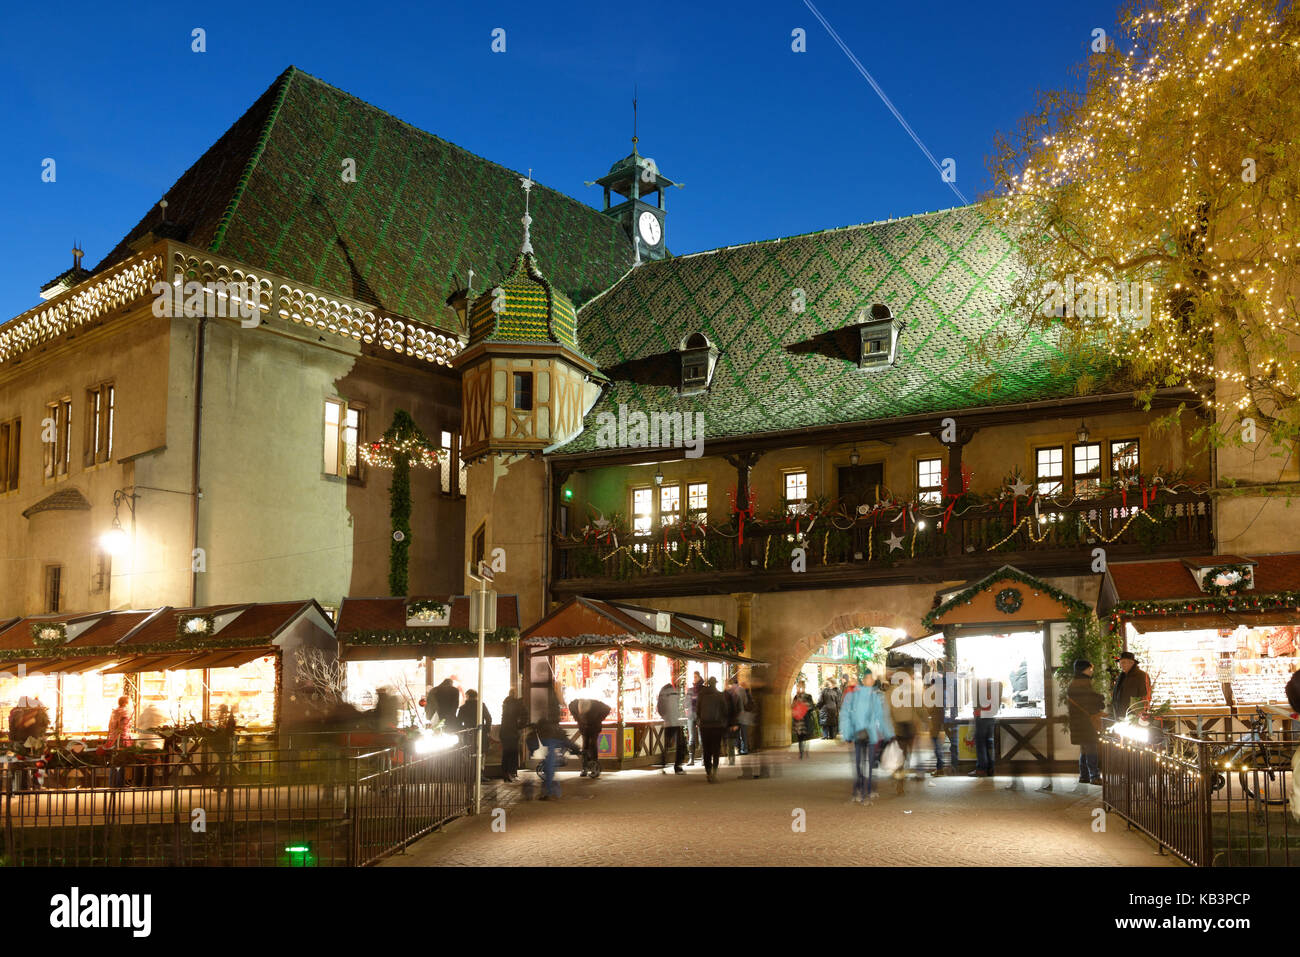 Francia, Alto Rin, Colmar, mercado de Navidad en la Place de l'Ancienne Douane, el antiguo douane o edificio de control de aduanas (Koifhus) Foto de stock